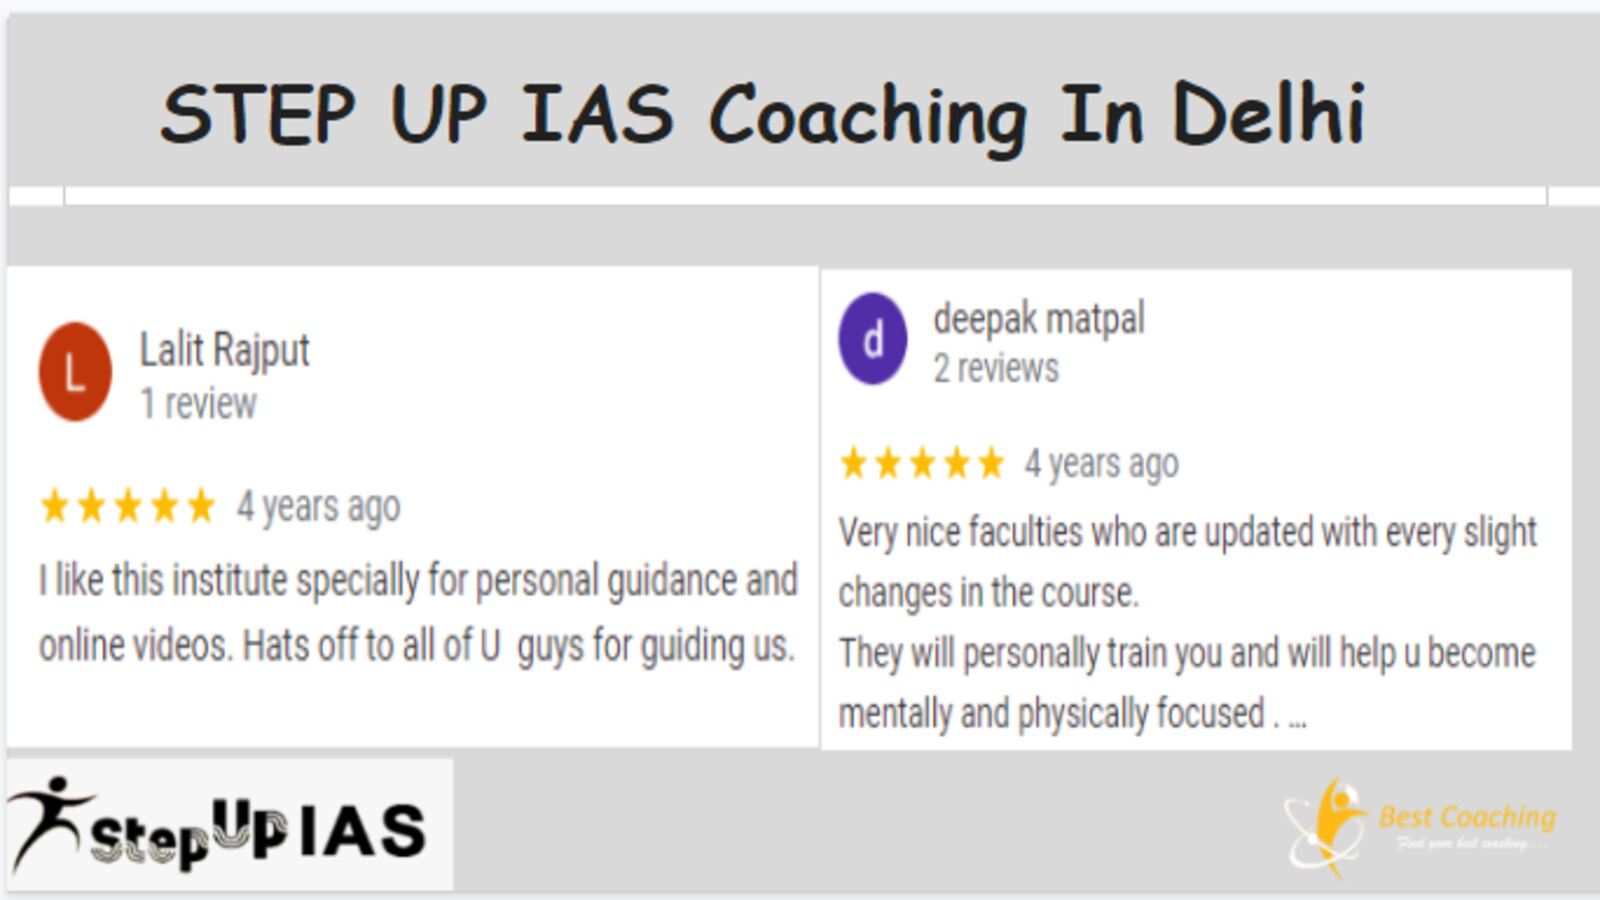 STEP UP IAS Coaching Delhi reviews